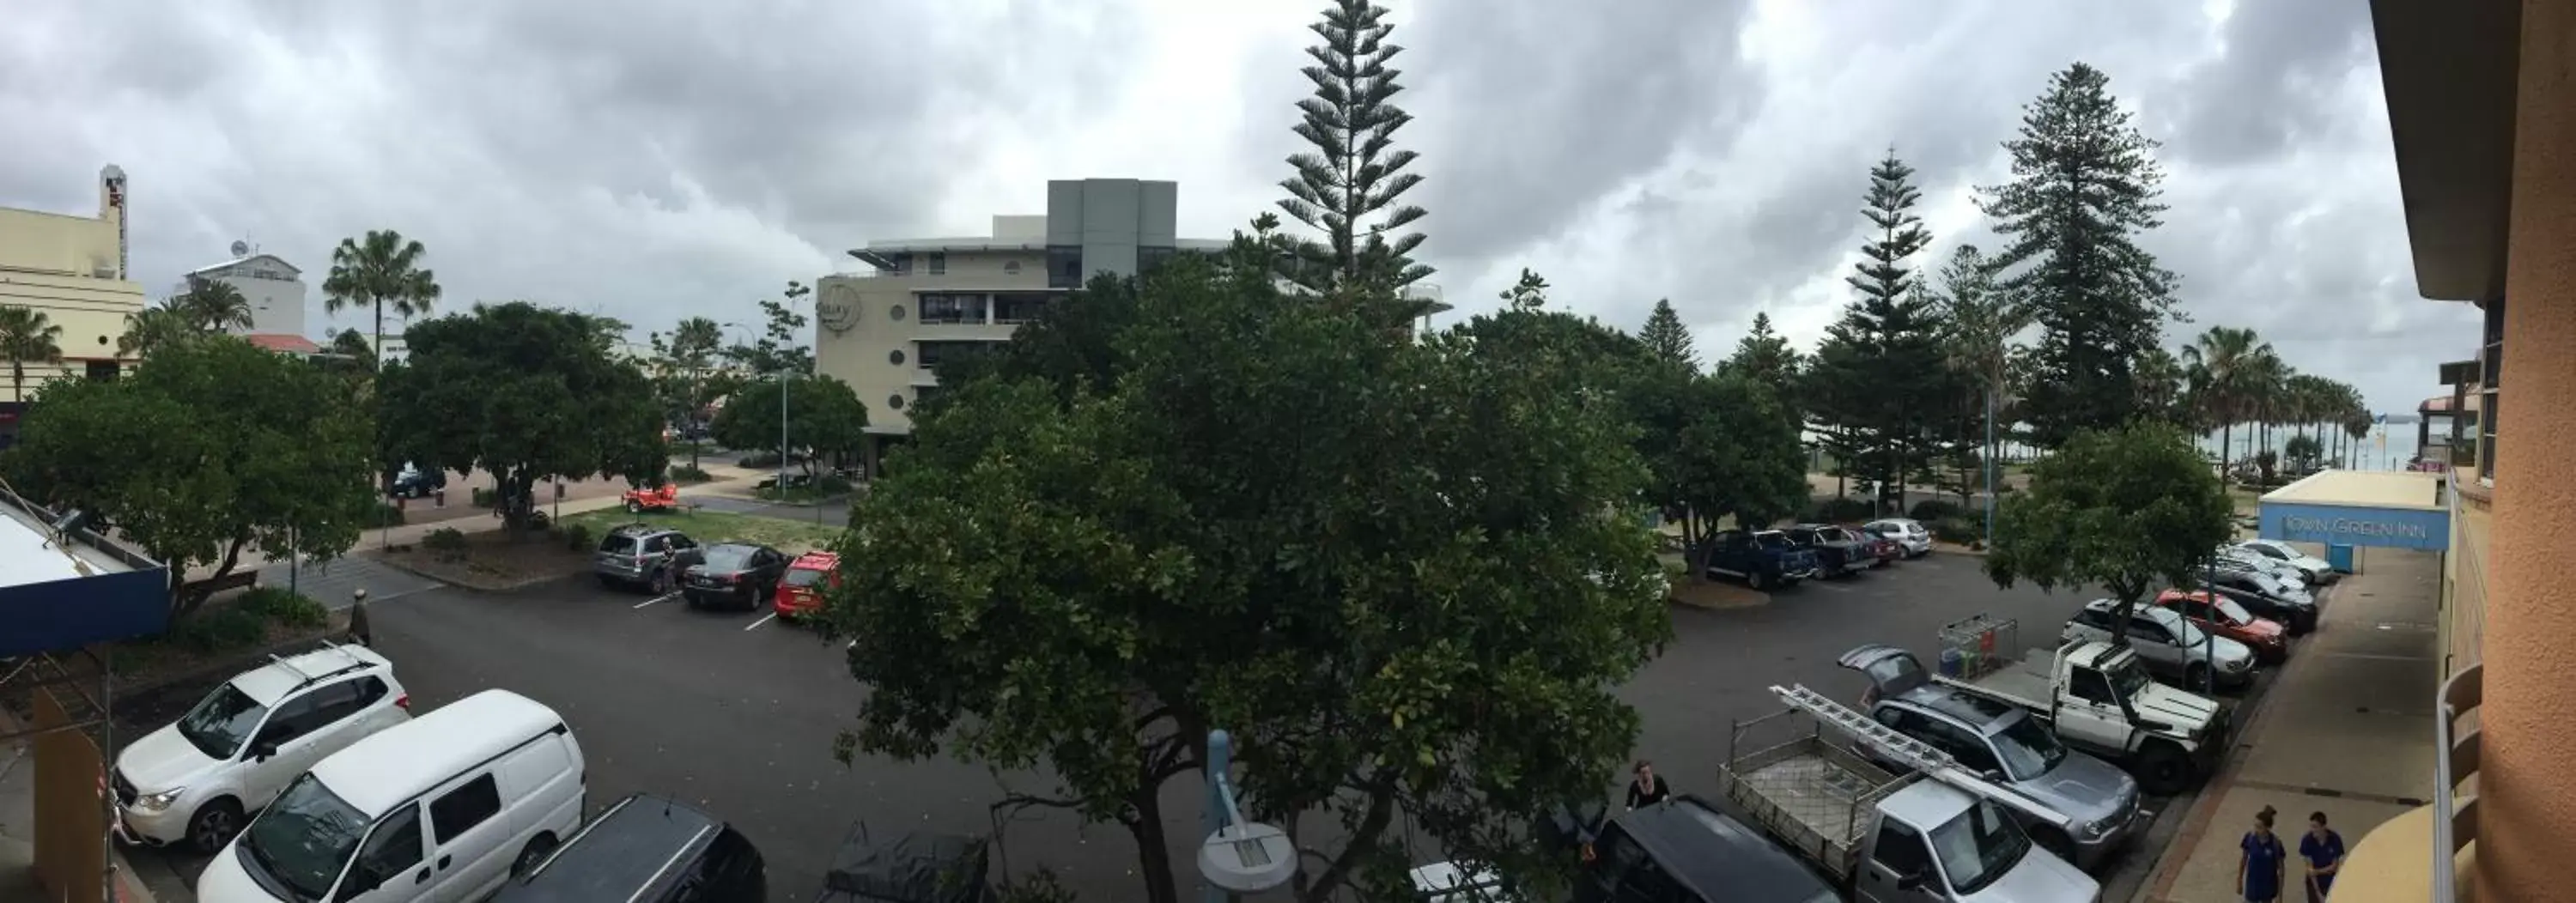 Street view, Neighborhood in Port Macquarie Hotel